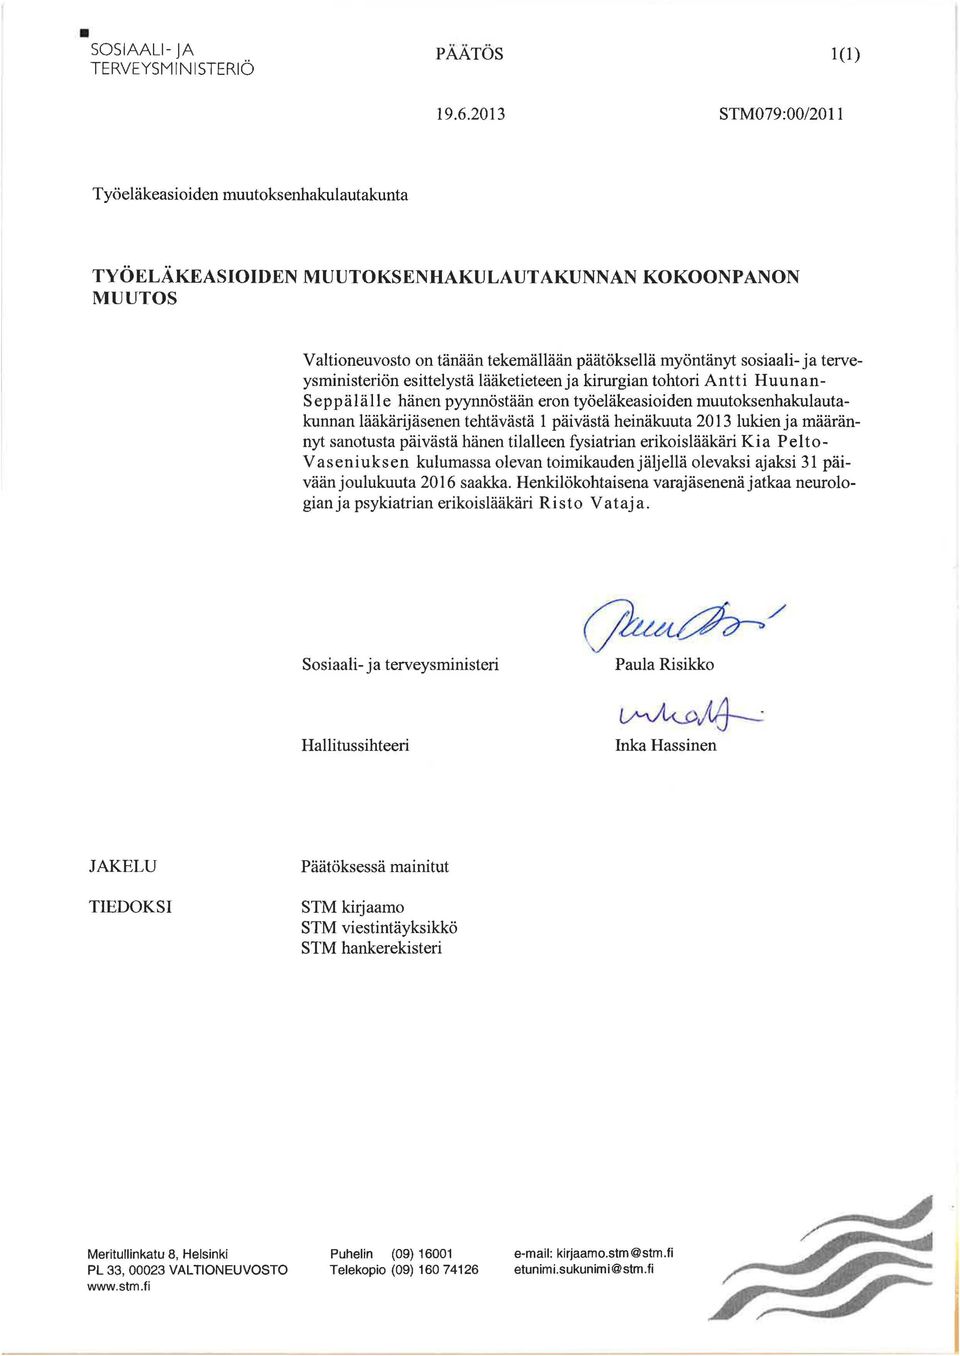 kirurgian tohtori Antti Huunan Seppälälle hänen pyynnöstään eron työeläkeasioiden muutoksenhakulautakunnan lääkärijäsenen tehtävästä 1 päivästä heinäkuuta 2013 lukien ja määrännyt sanotusta päivästä